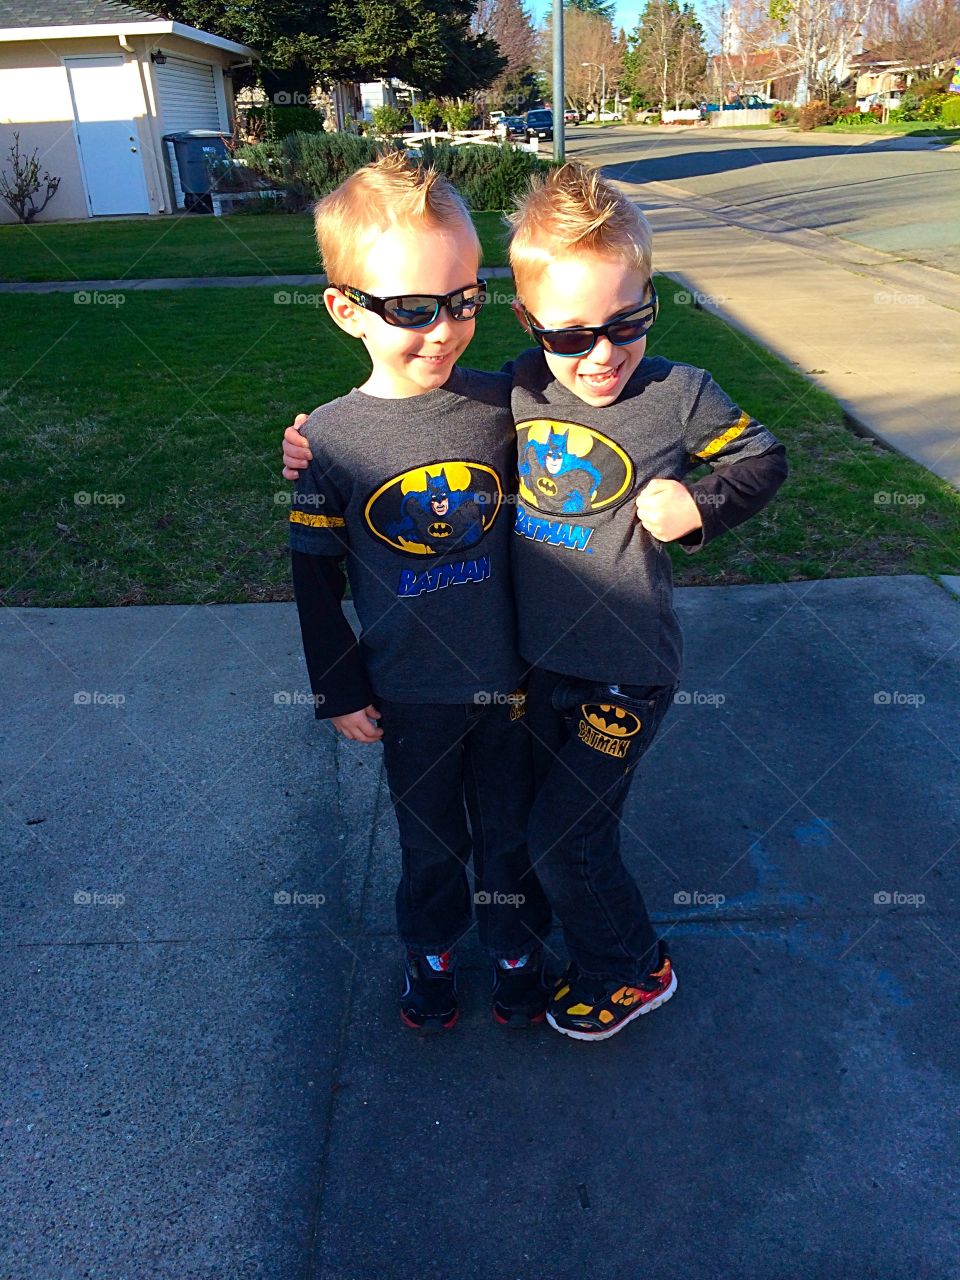 Superheroes in training. Twins posing as superheroes 